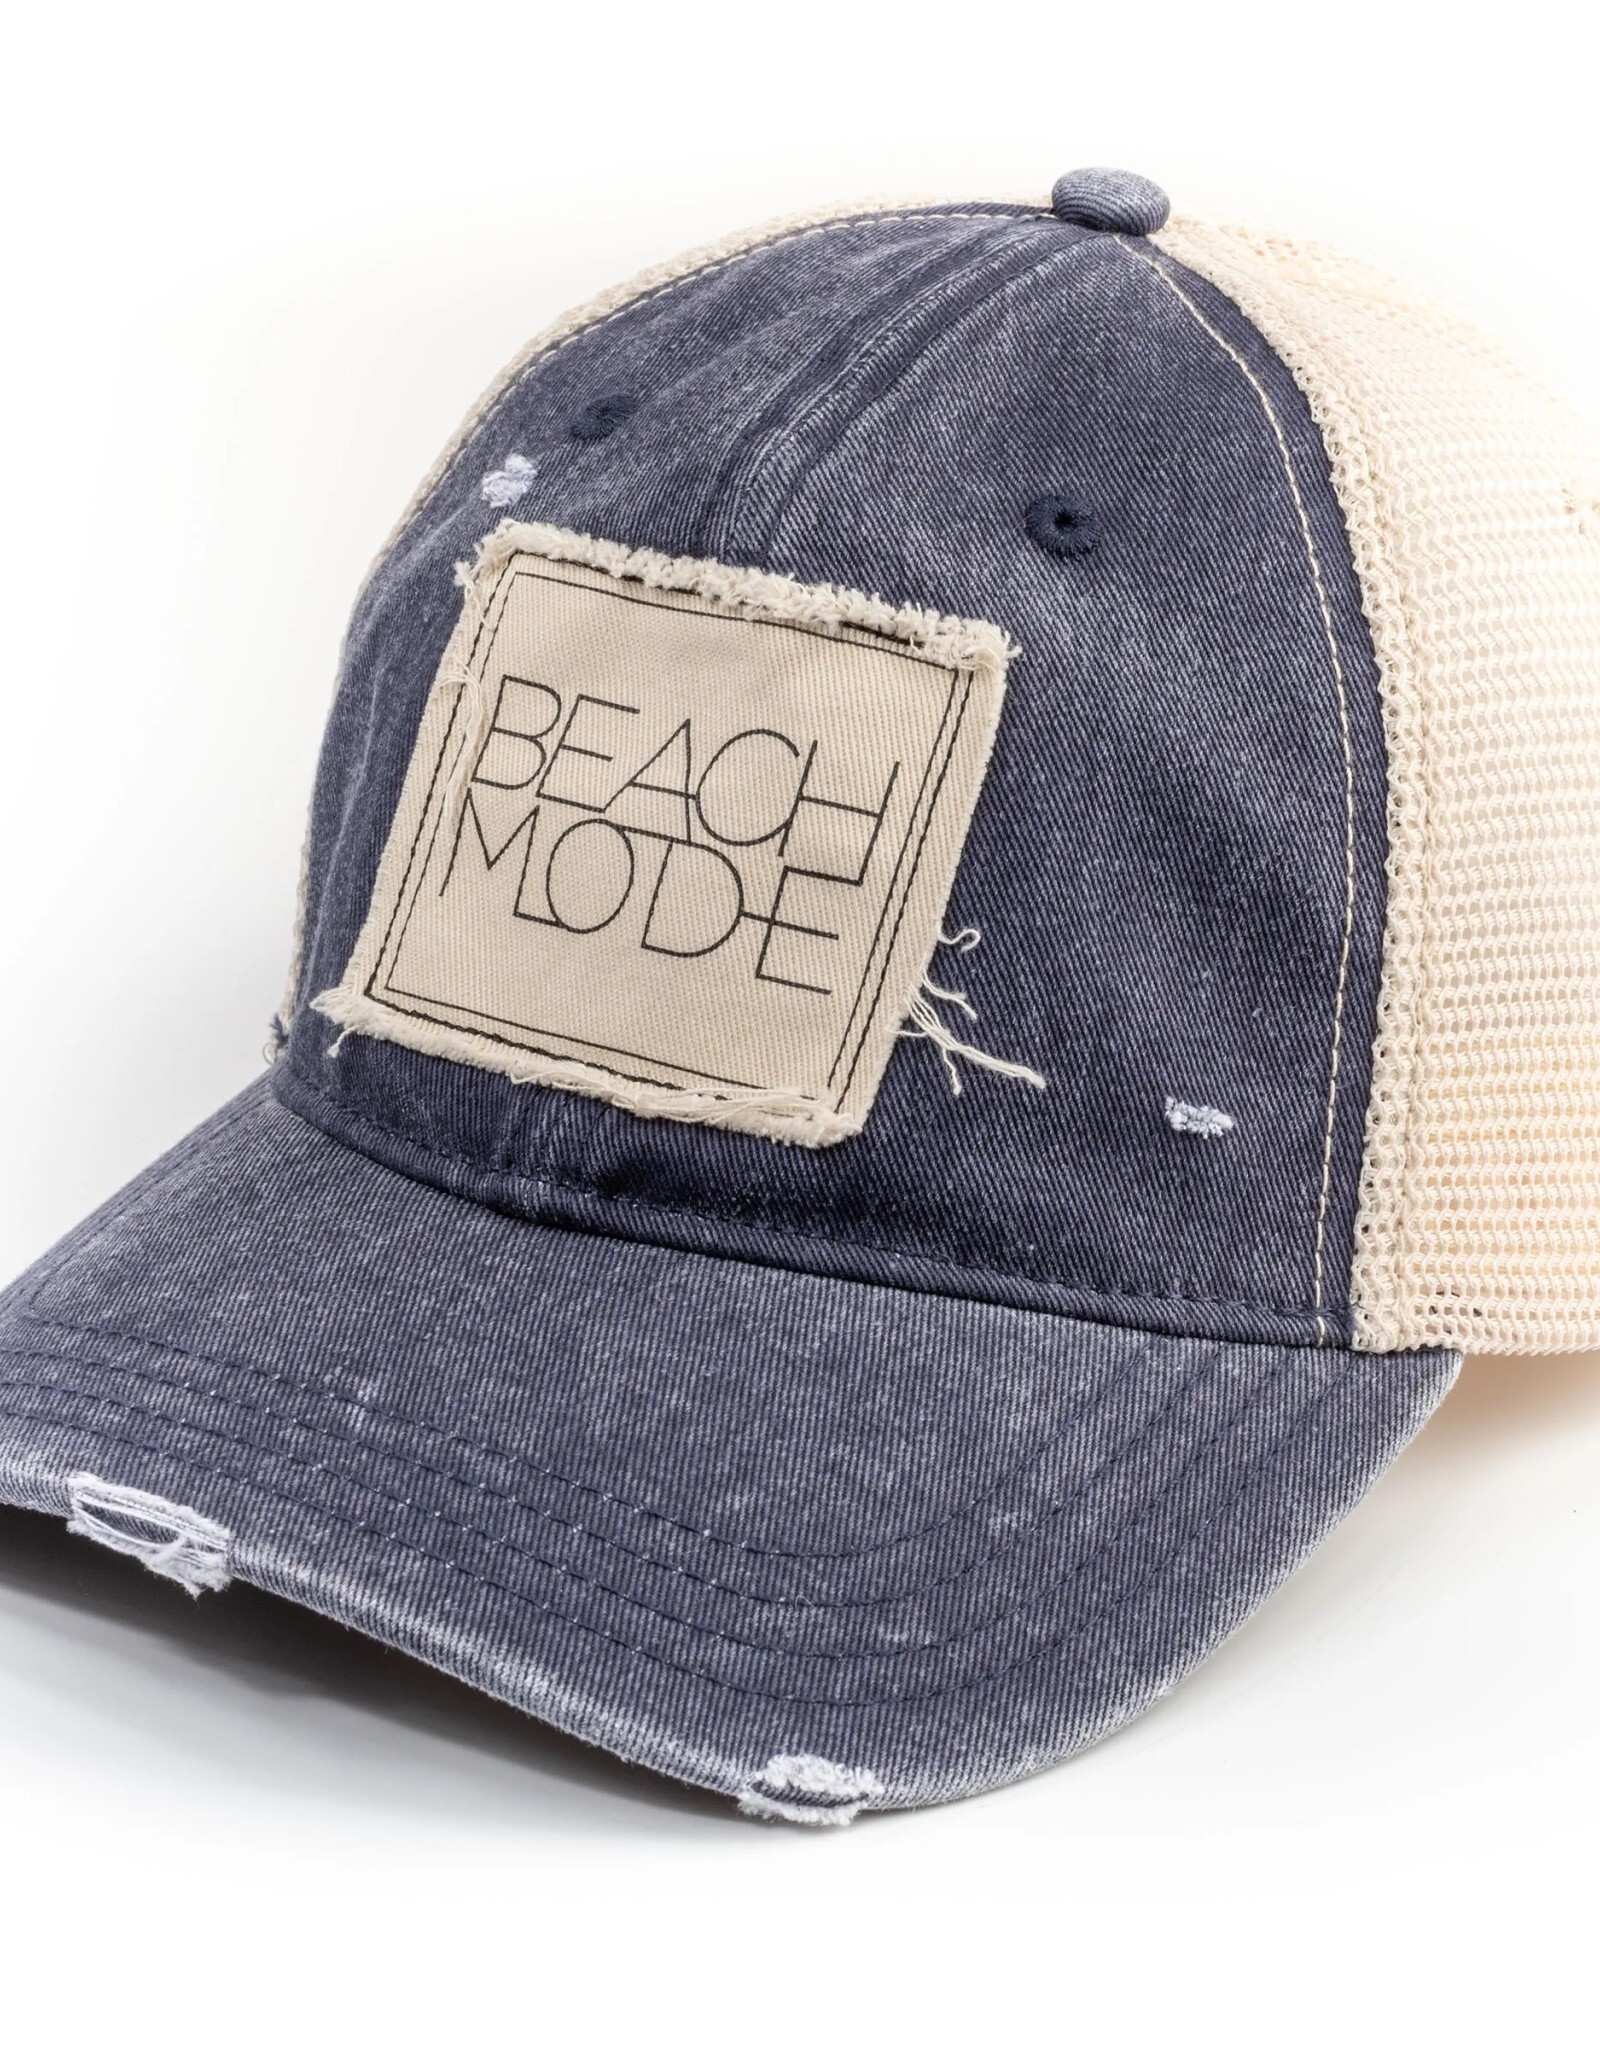 Trucker Hat Beach Mode